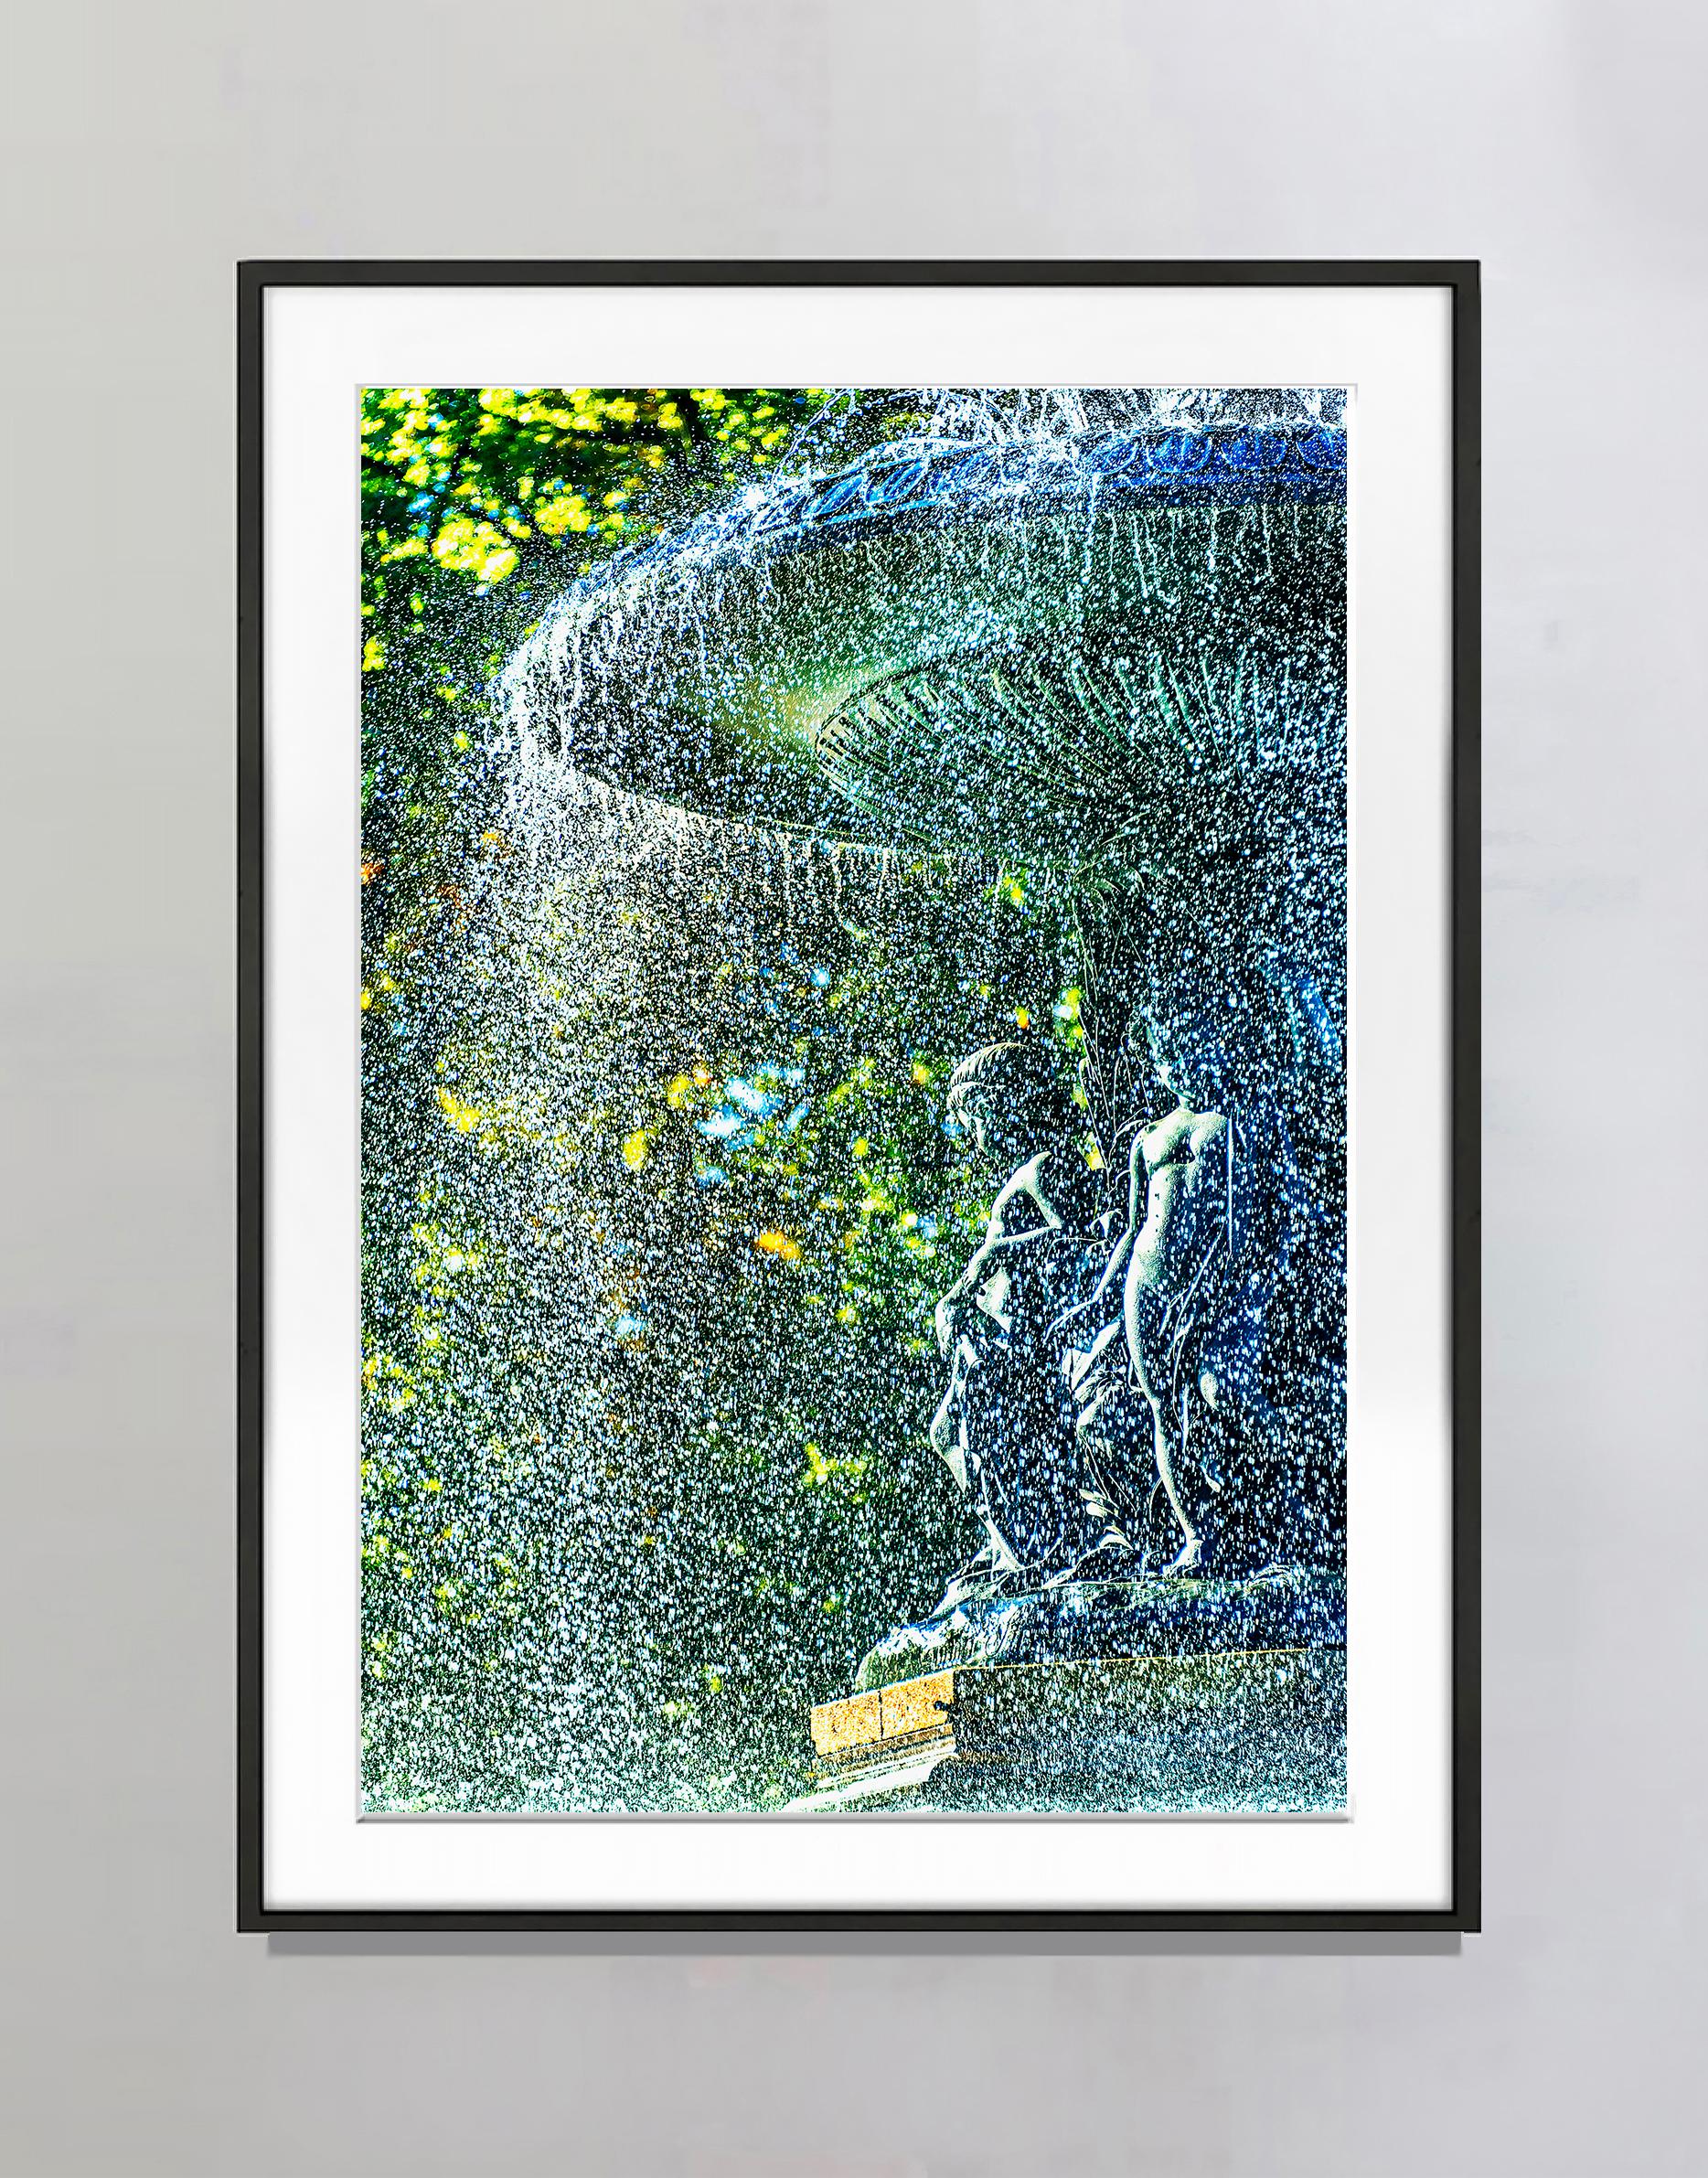 Bethesda-Brunnen im Regen gebaucht wie Wassertropfen  -  Zentraler Park – Photograph von Mitchell Funk